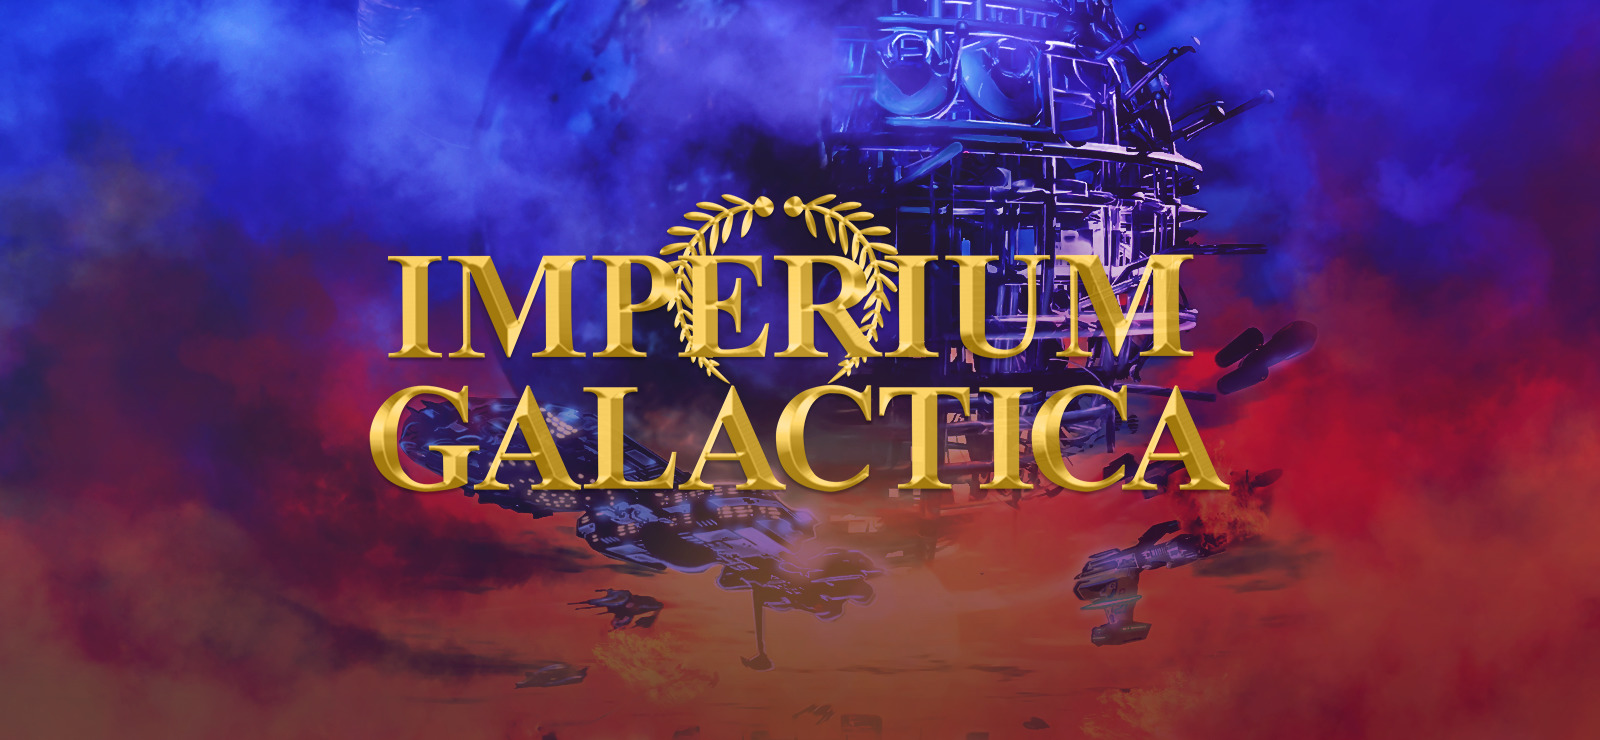 imperium galactica 2 download